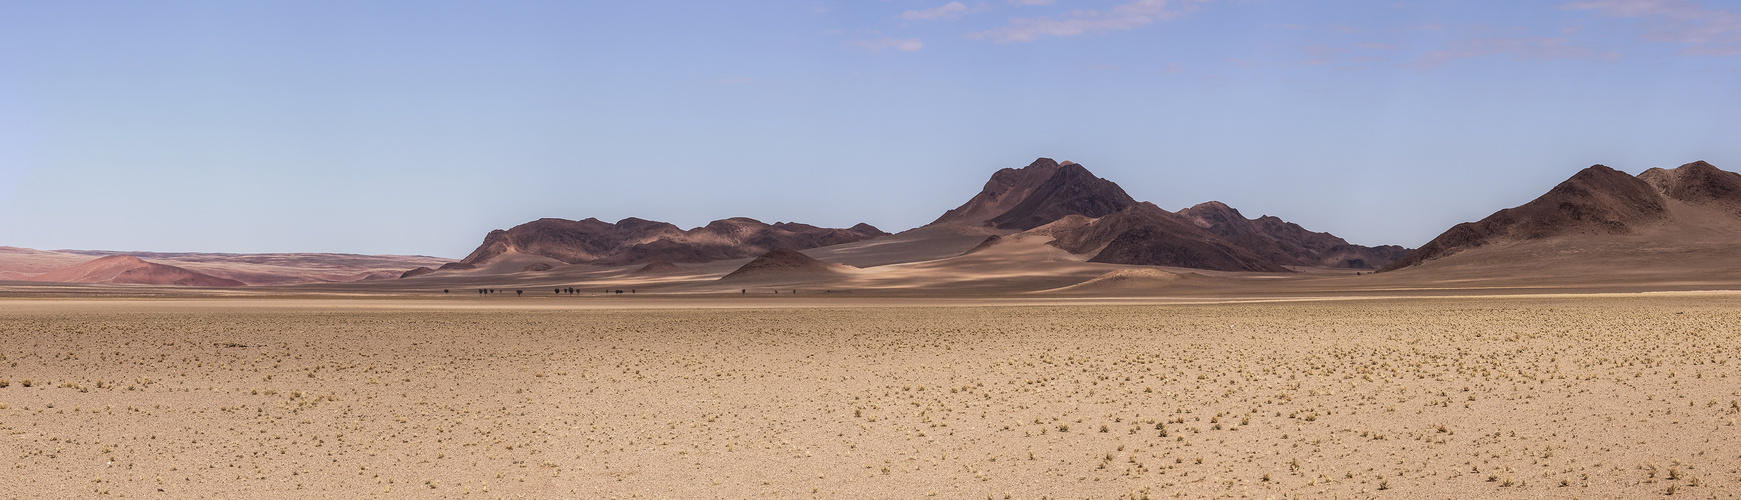 Namib Naukluft Landscape - Endless Horizons